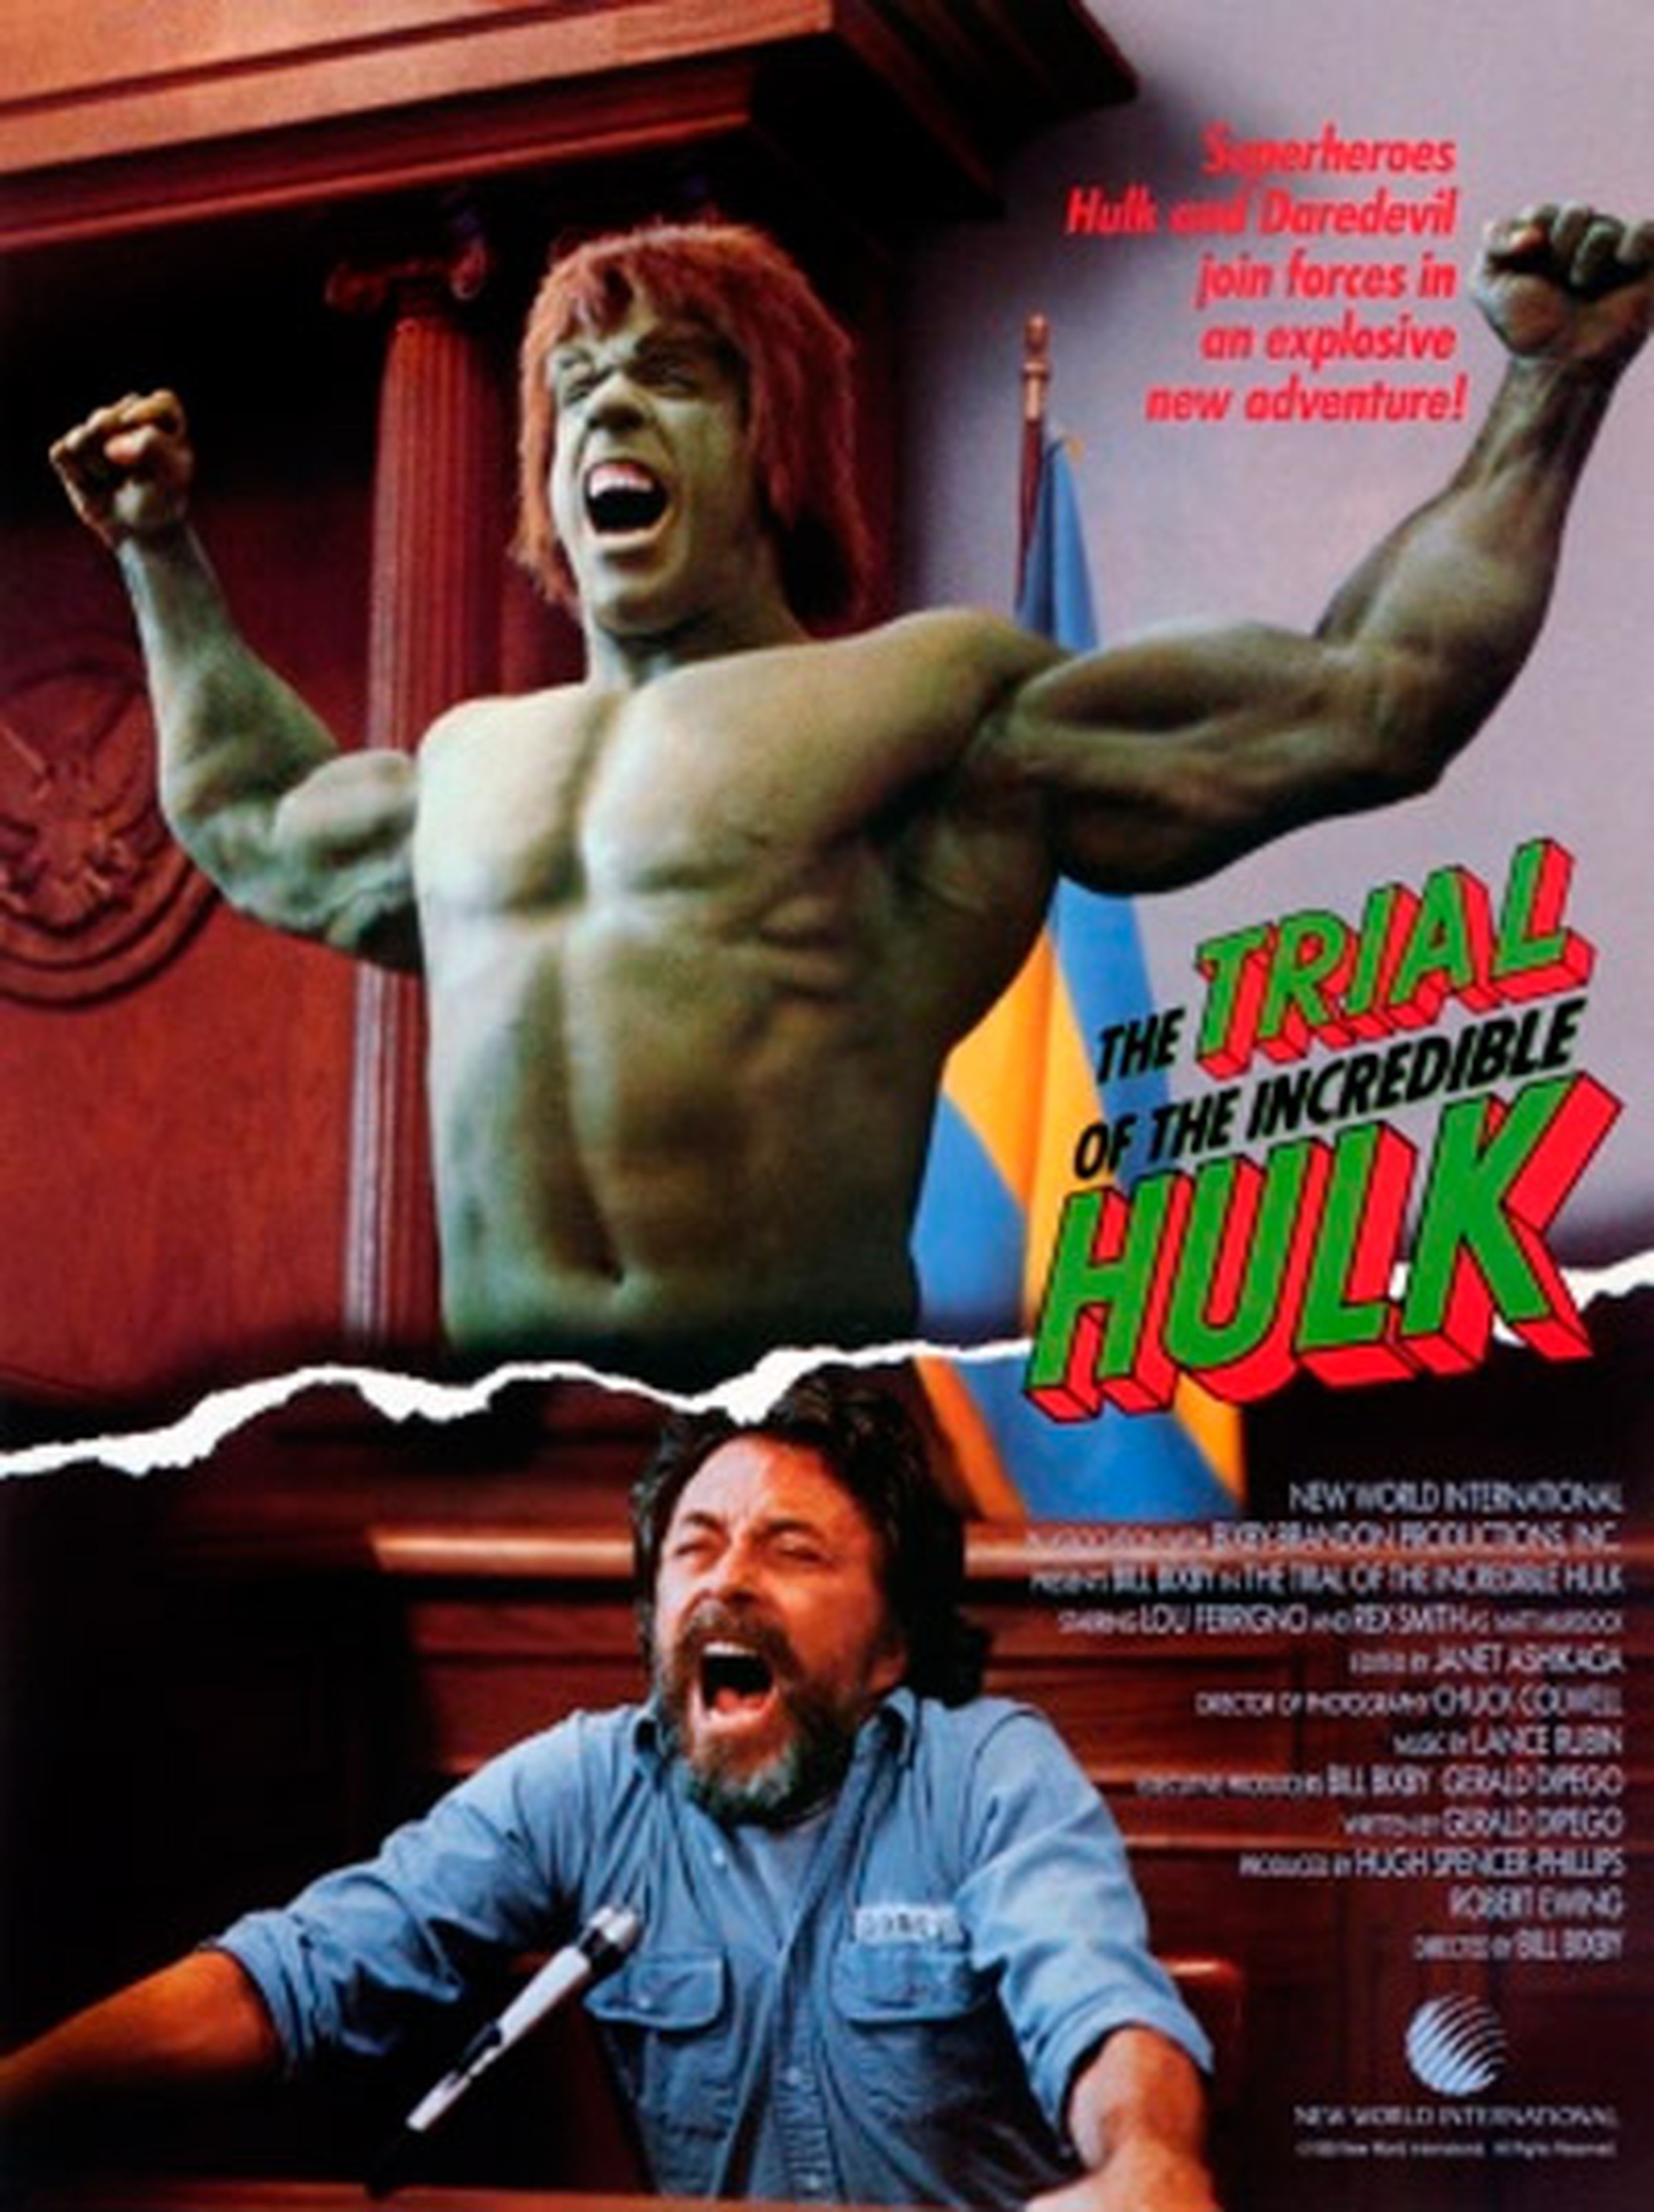 El juicio al Increíble Hulk - Crítica de la tv movie